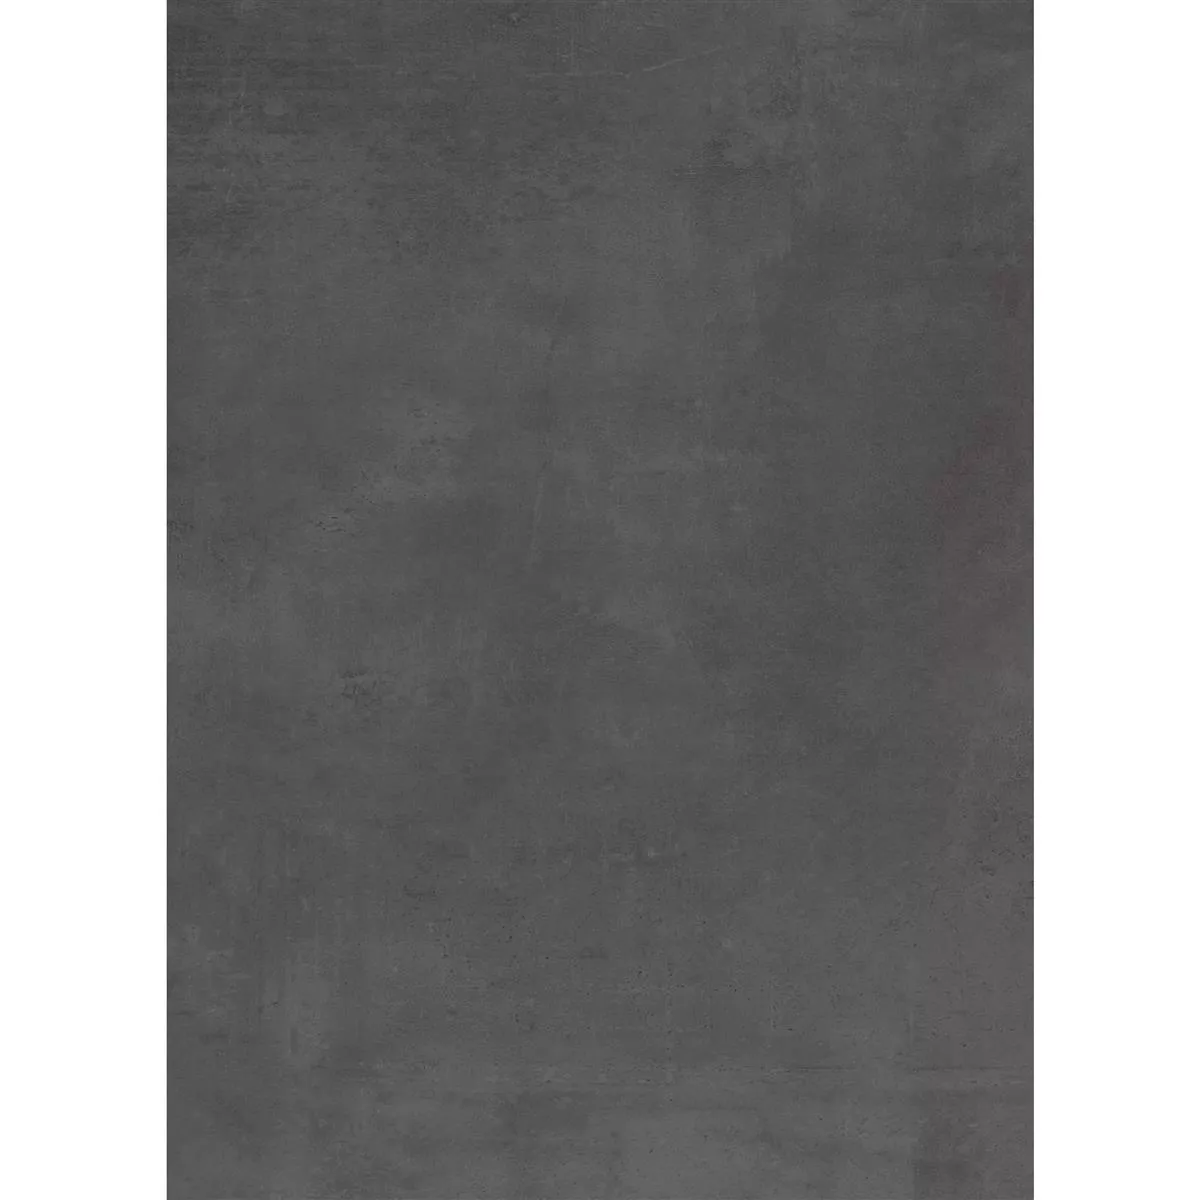 Vzorek Podlahové Dlaždice Assos Betonový Vzhled R10/B Antracitová 60x120cm